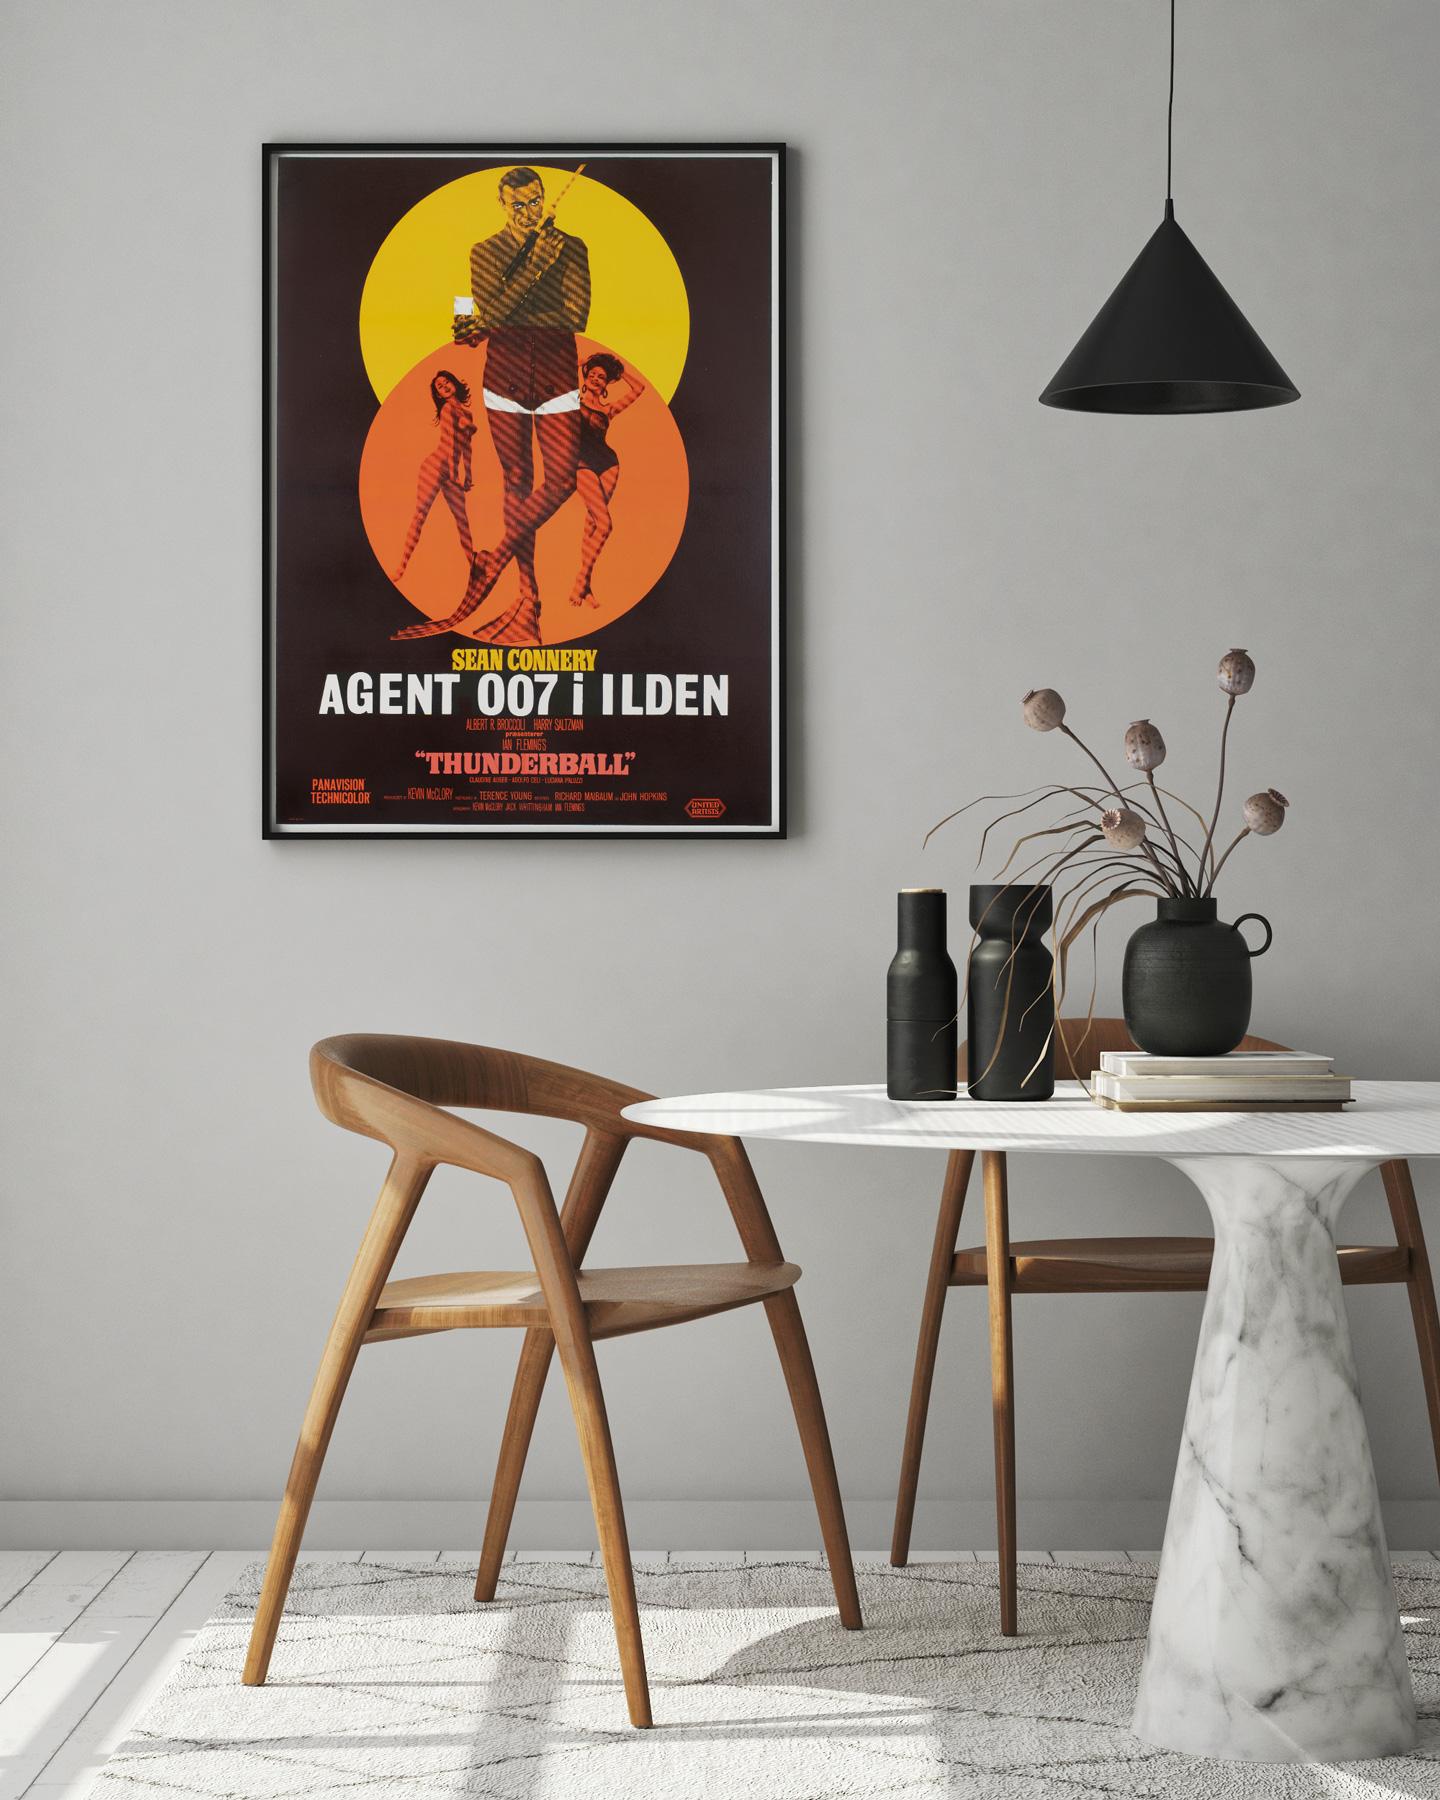 Das wunderbare dänische Filmplakat zur Erstveröffentlichung des James-Bond-Films Thunderball. Wir lieben das Design dieses Plakats, fantastische, kräftige Farben. Eines der besten Plakate zu diesem Titel und äußerst selten. 

Dieses